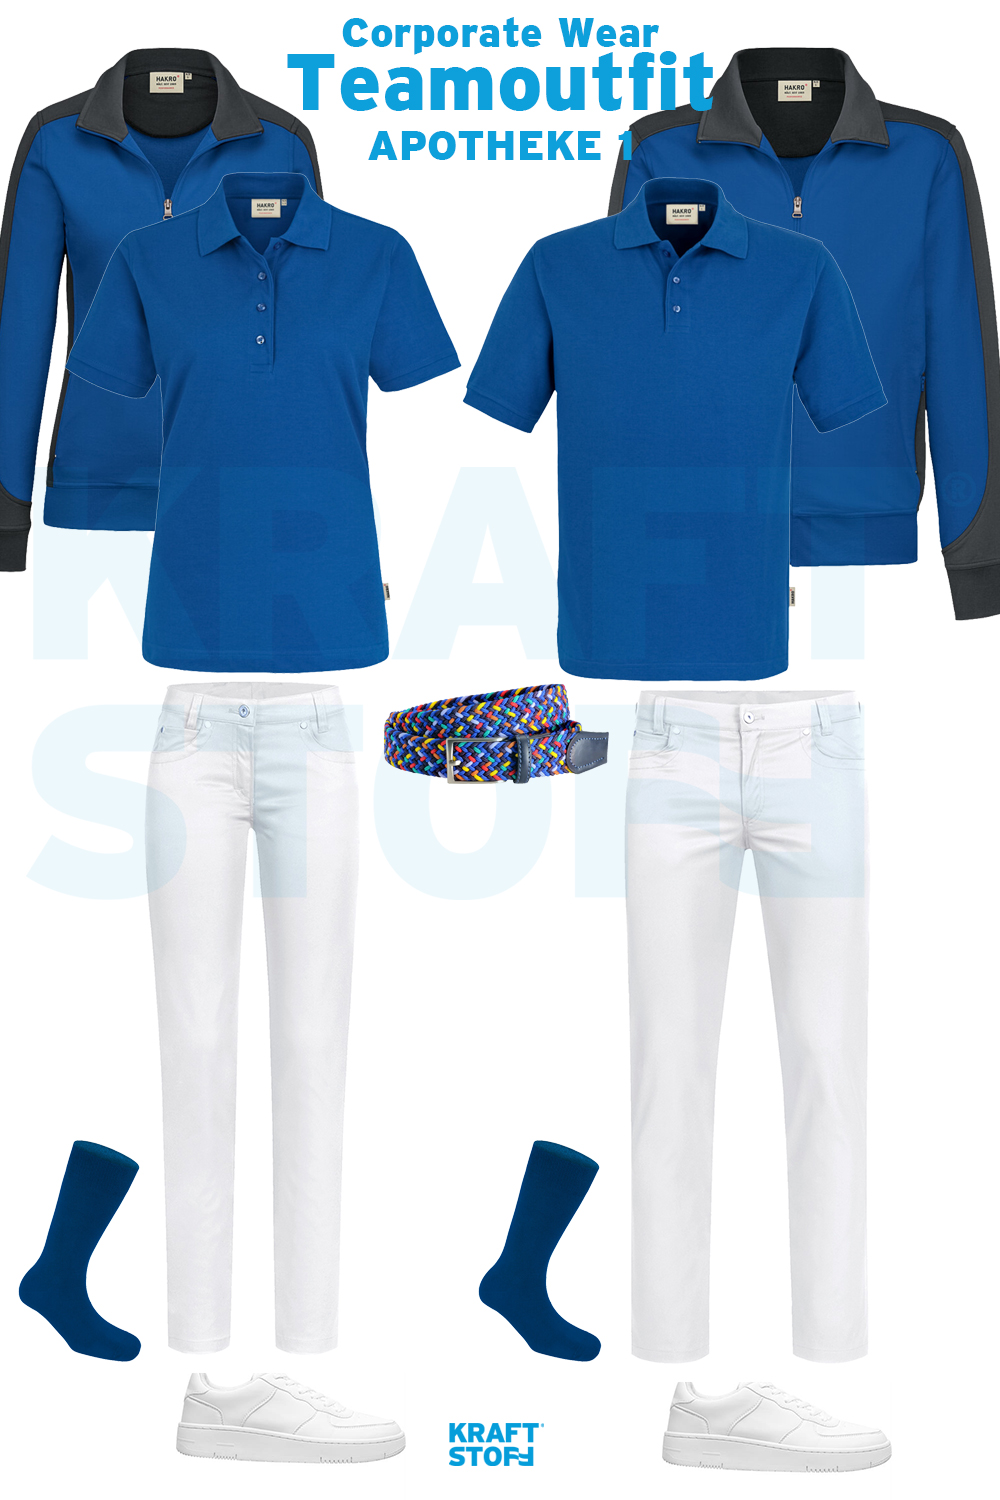 Berufsbekleidung Apotheke, Teamoutfit, blaue Poloshirts, blaue Sweatjacke, weiße Hosen, weiße Sneaker, blaue Socken, bunter Gürtel